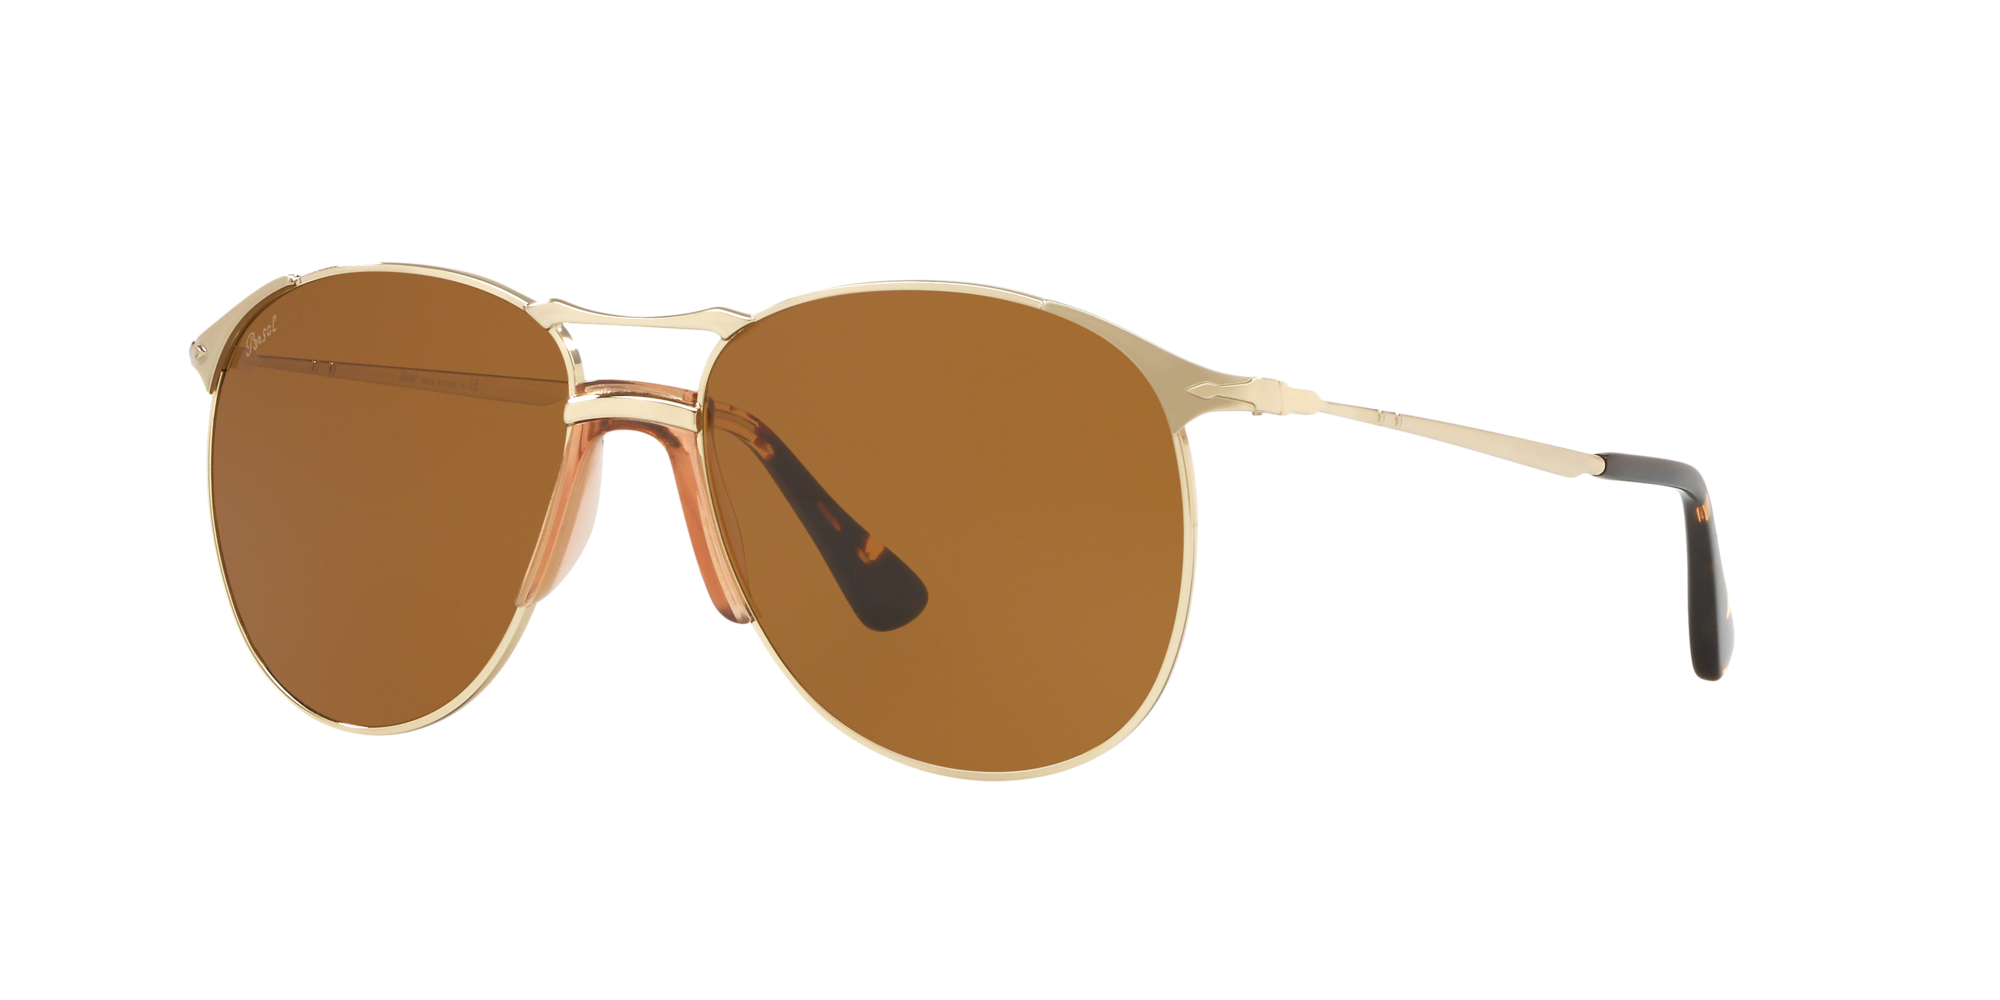 sunglasses hut persol